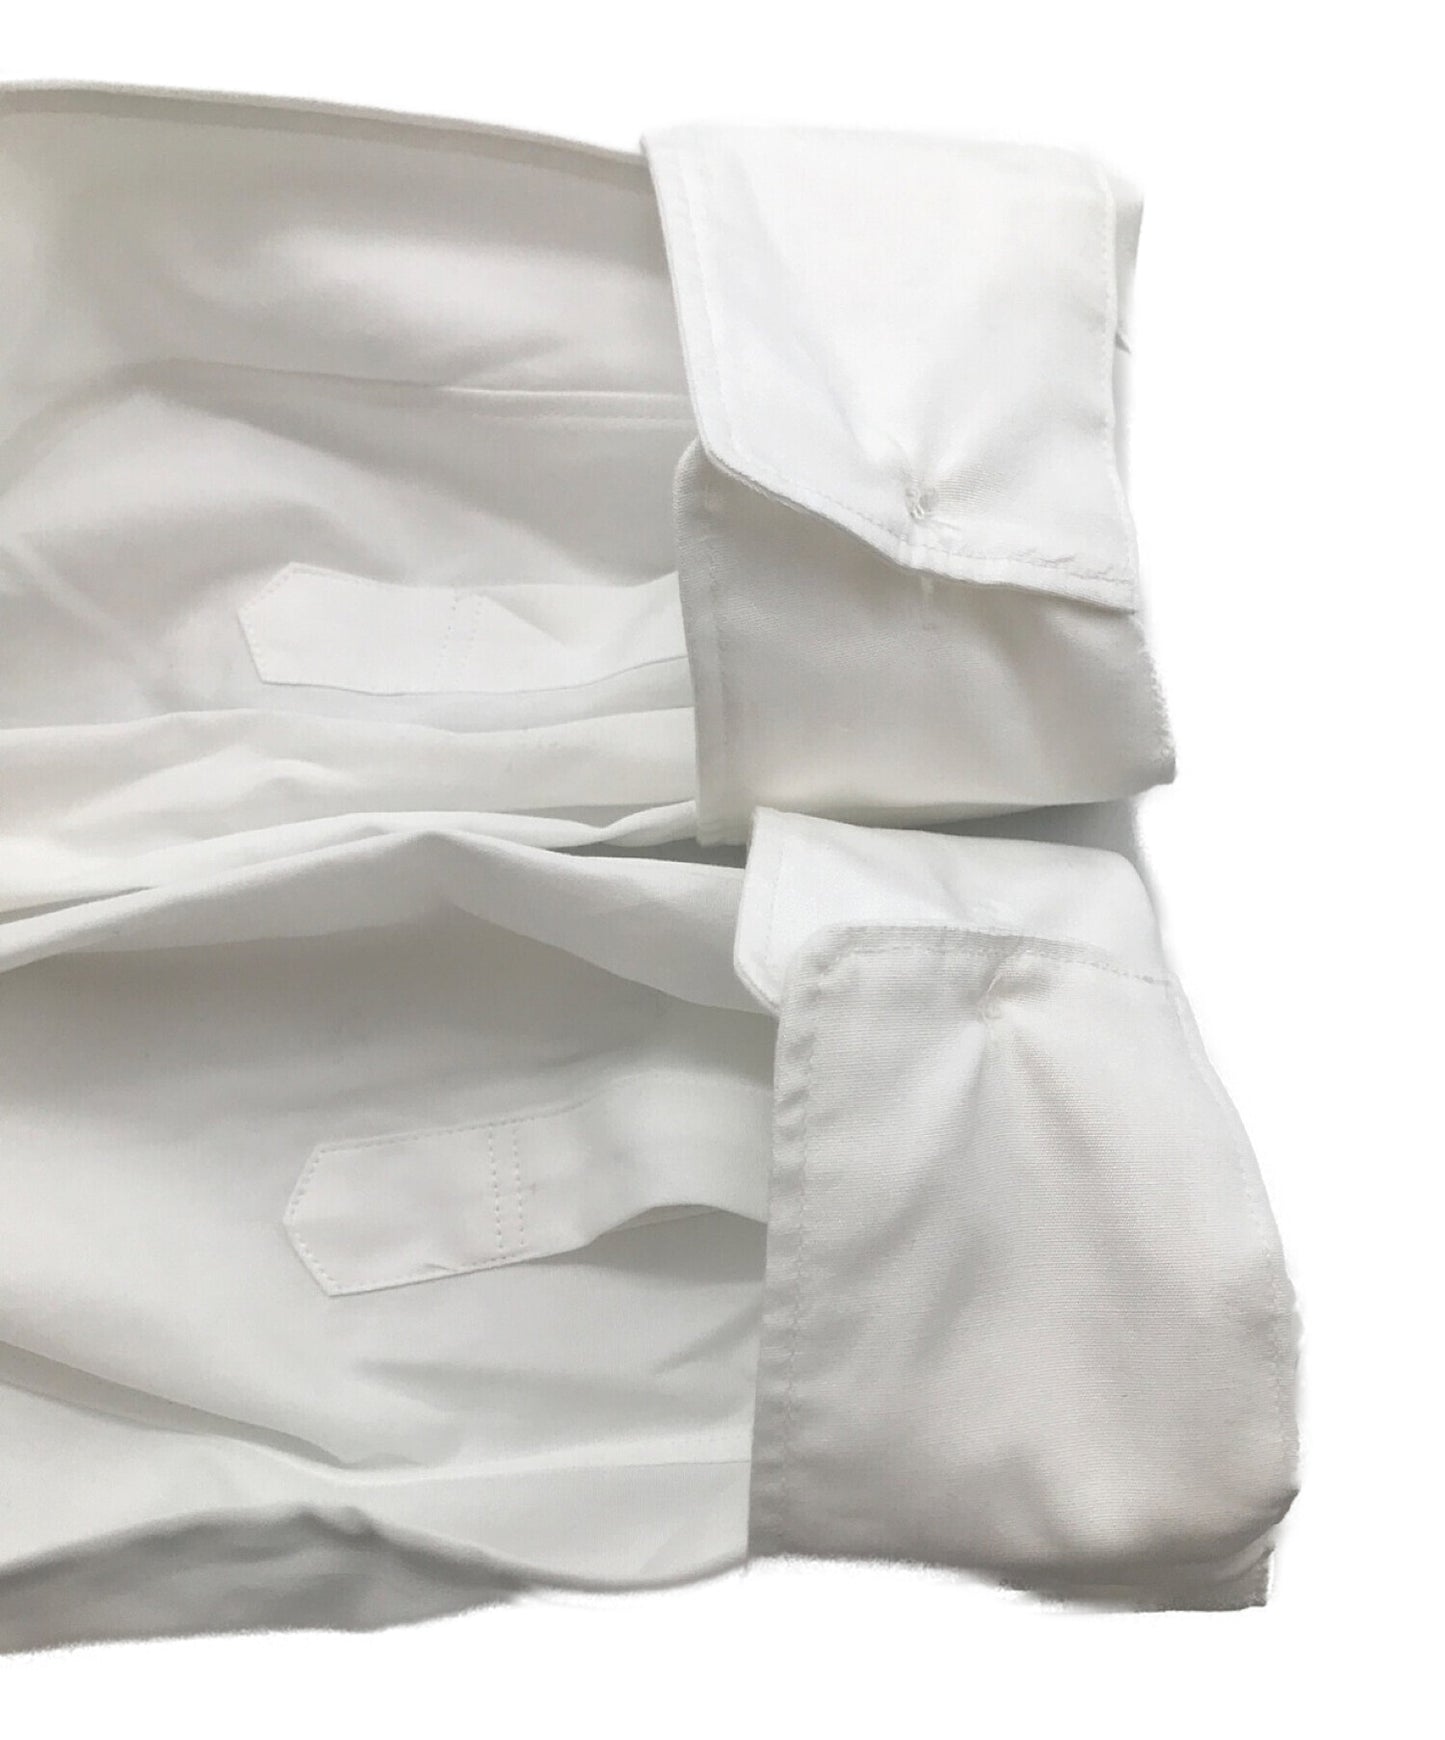 [Pre-owned] COMME des GARCONS HOMME PLUS ASYMMETRICAL SHIRT Long sleeve shirt (asymmetrical shirt) PK-B019